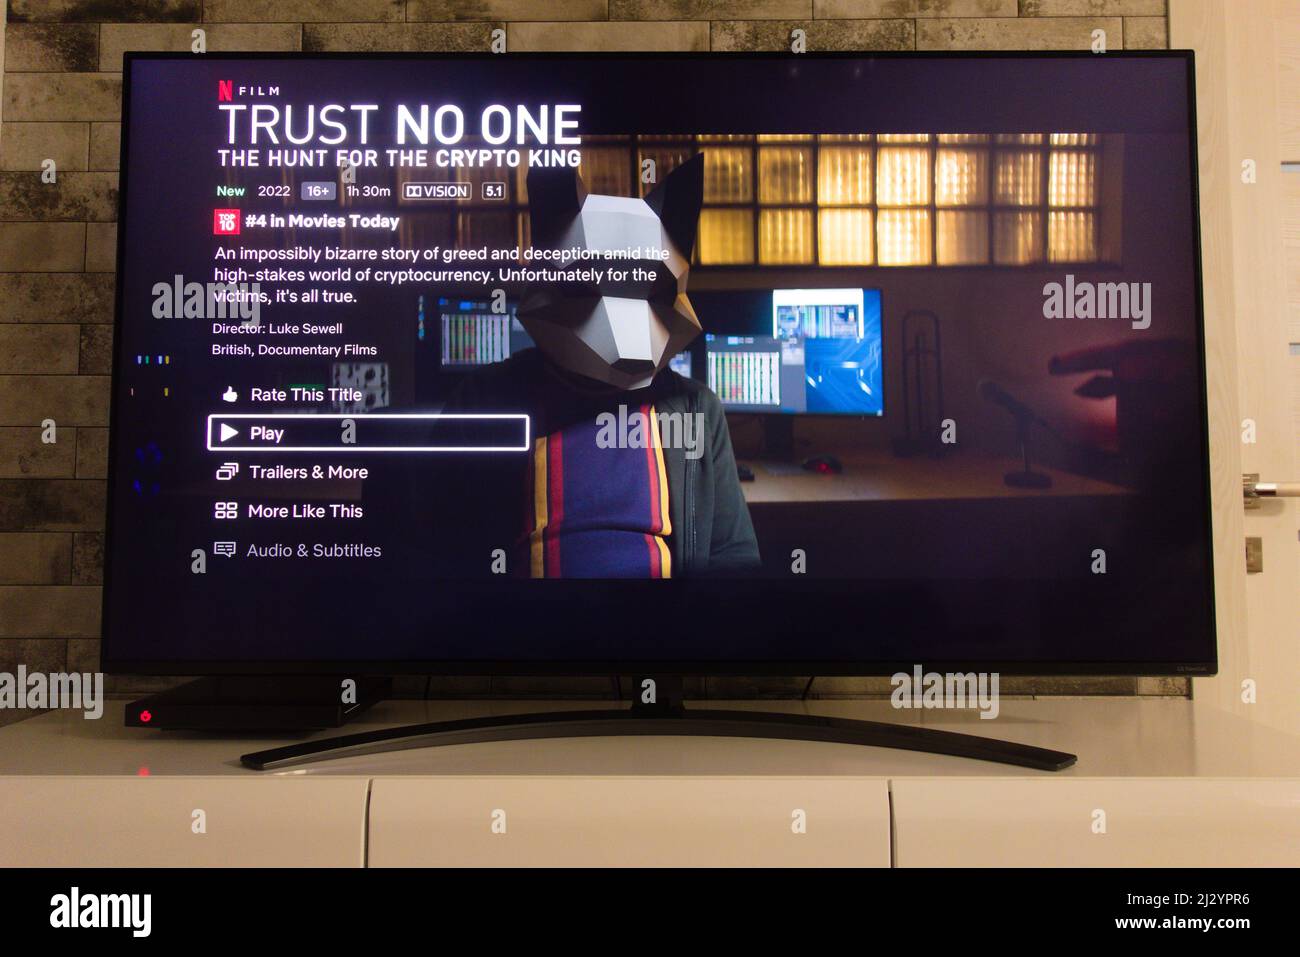 KONSKIE, POLONIA - 02 aprile 2022: Piattaforma Netflix sullo schermo tv visualizzazione Trust Nessuno: La caccia per il film documentario Crypto King Foto Stock